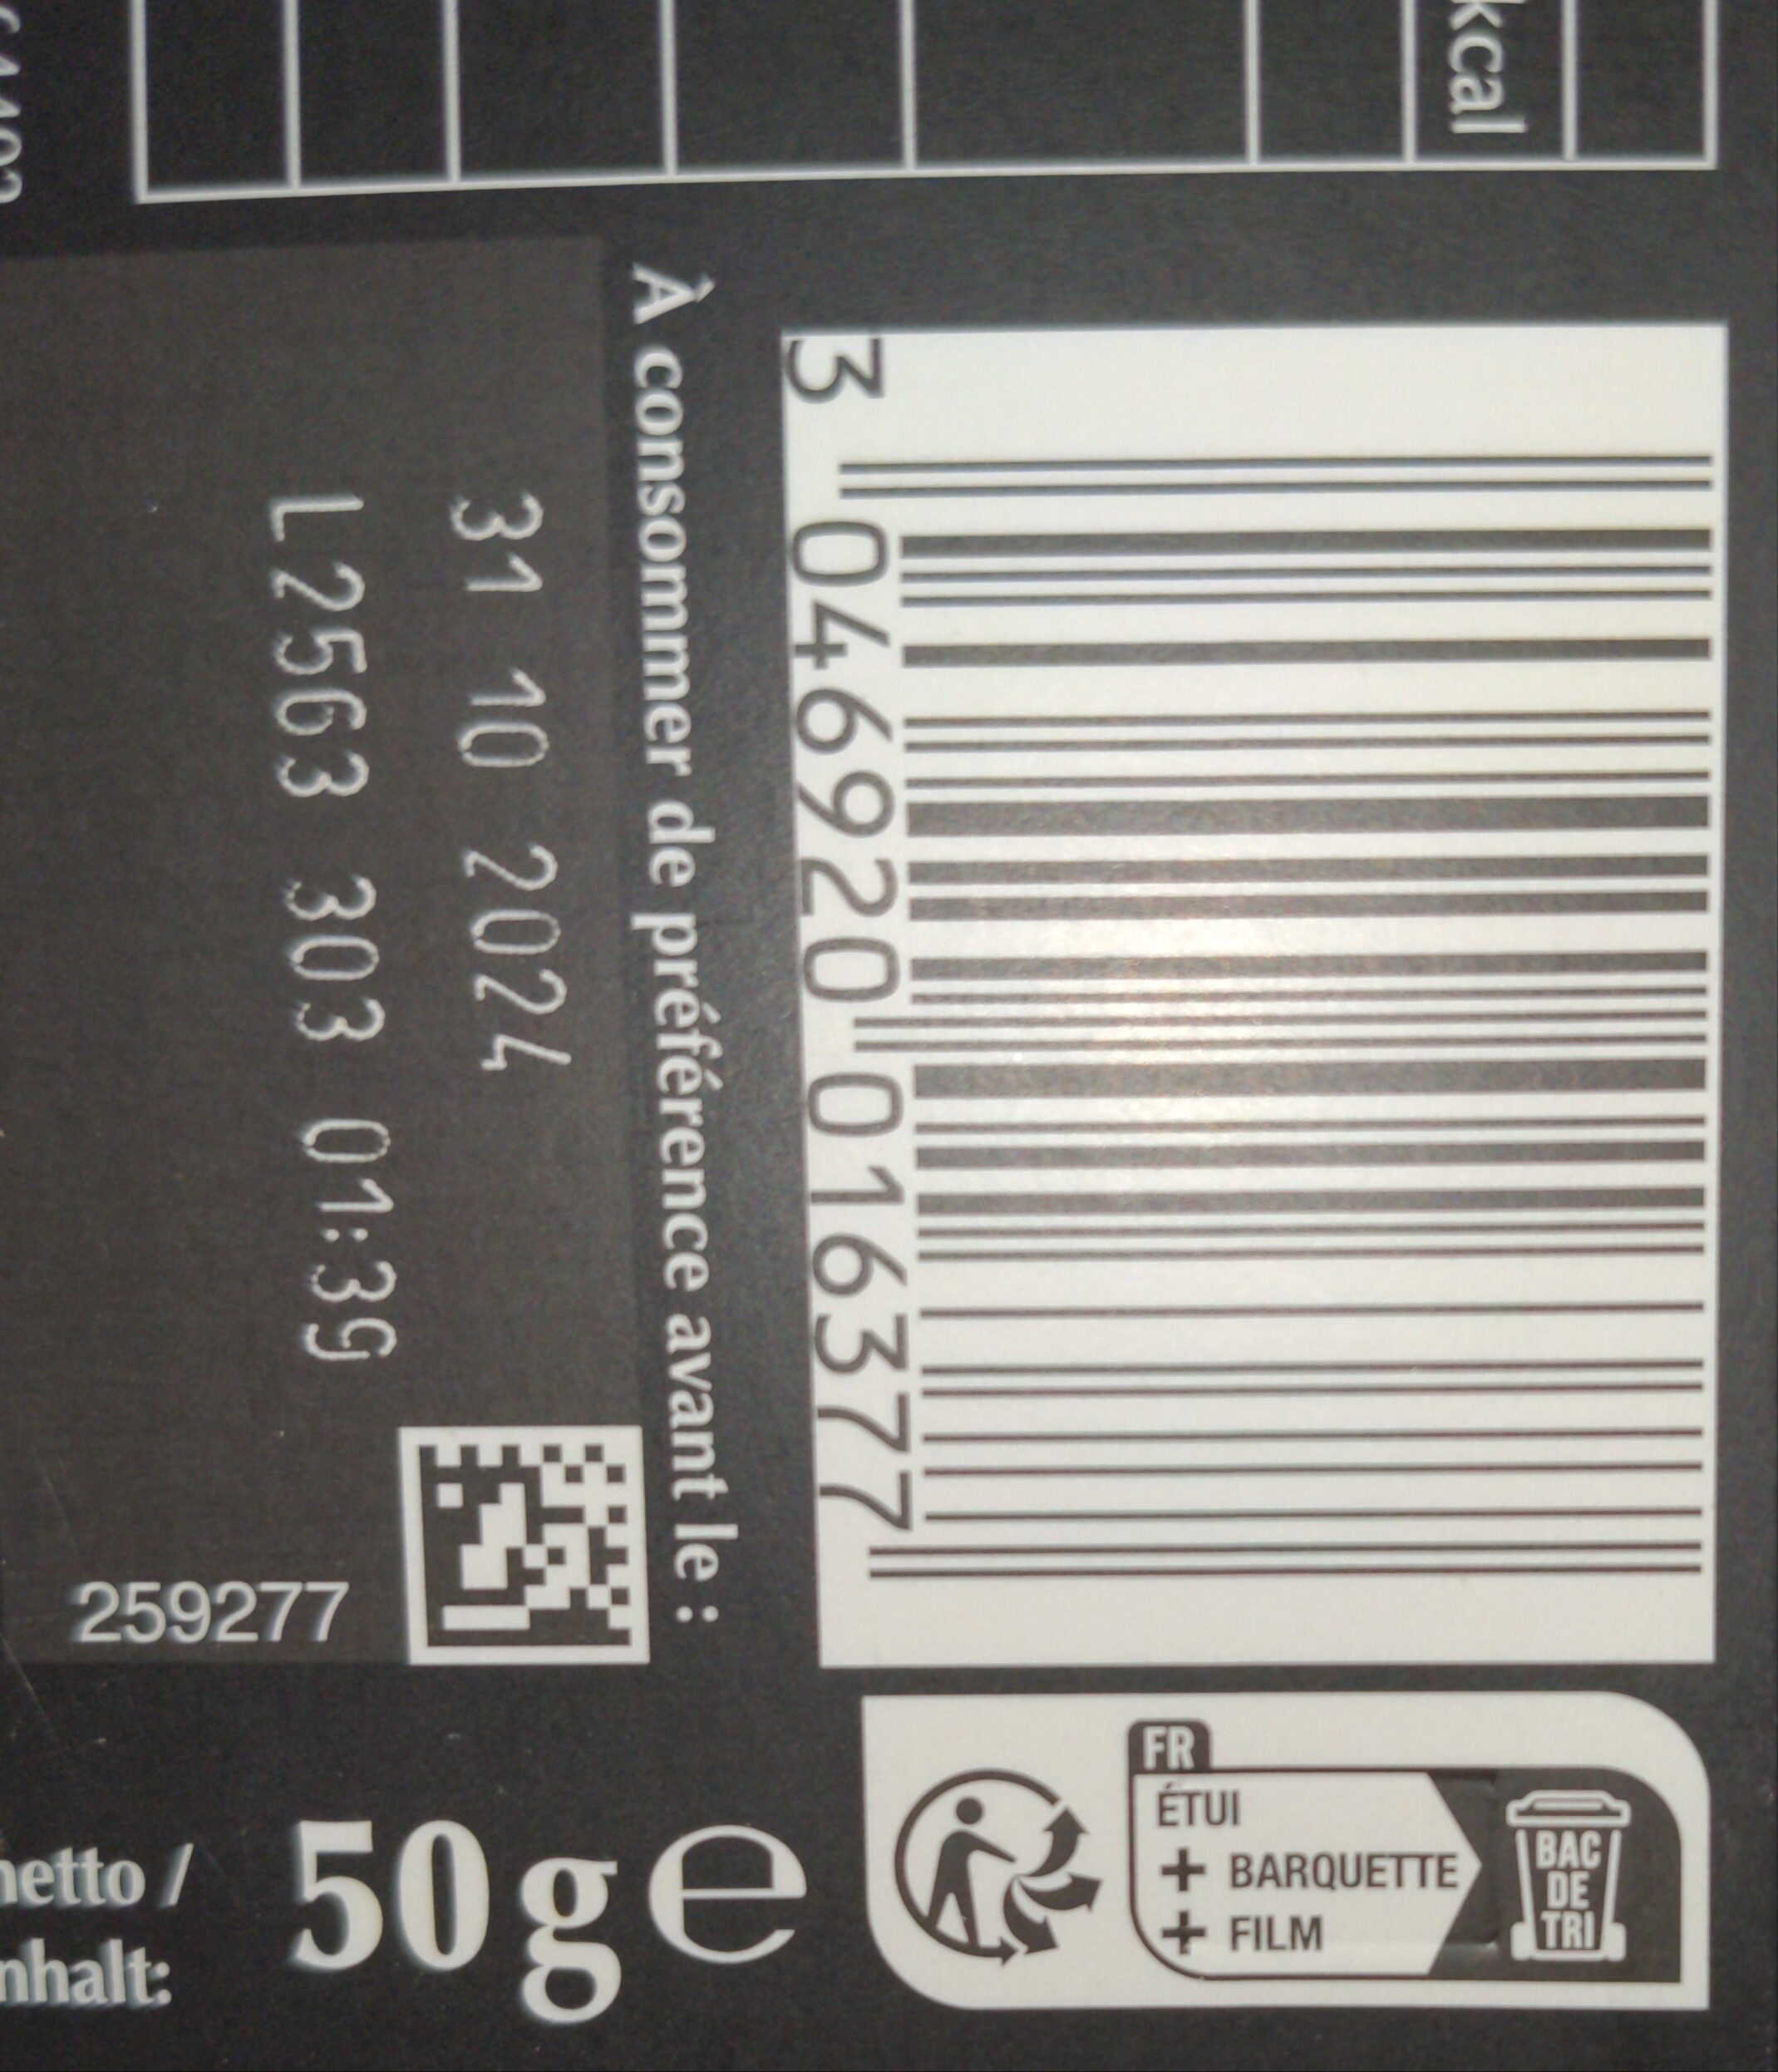 Excellence 100% cacao noir infini - Instruccions de reciclatge i/o informació d’embalatge - fr